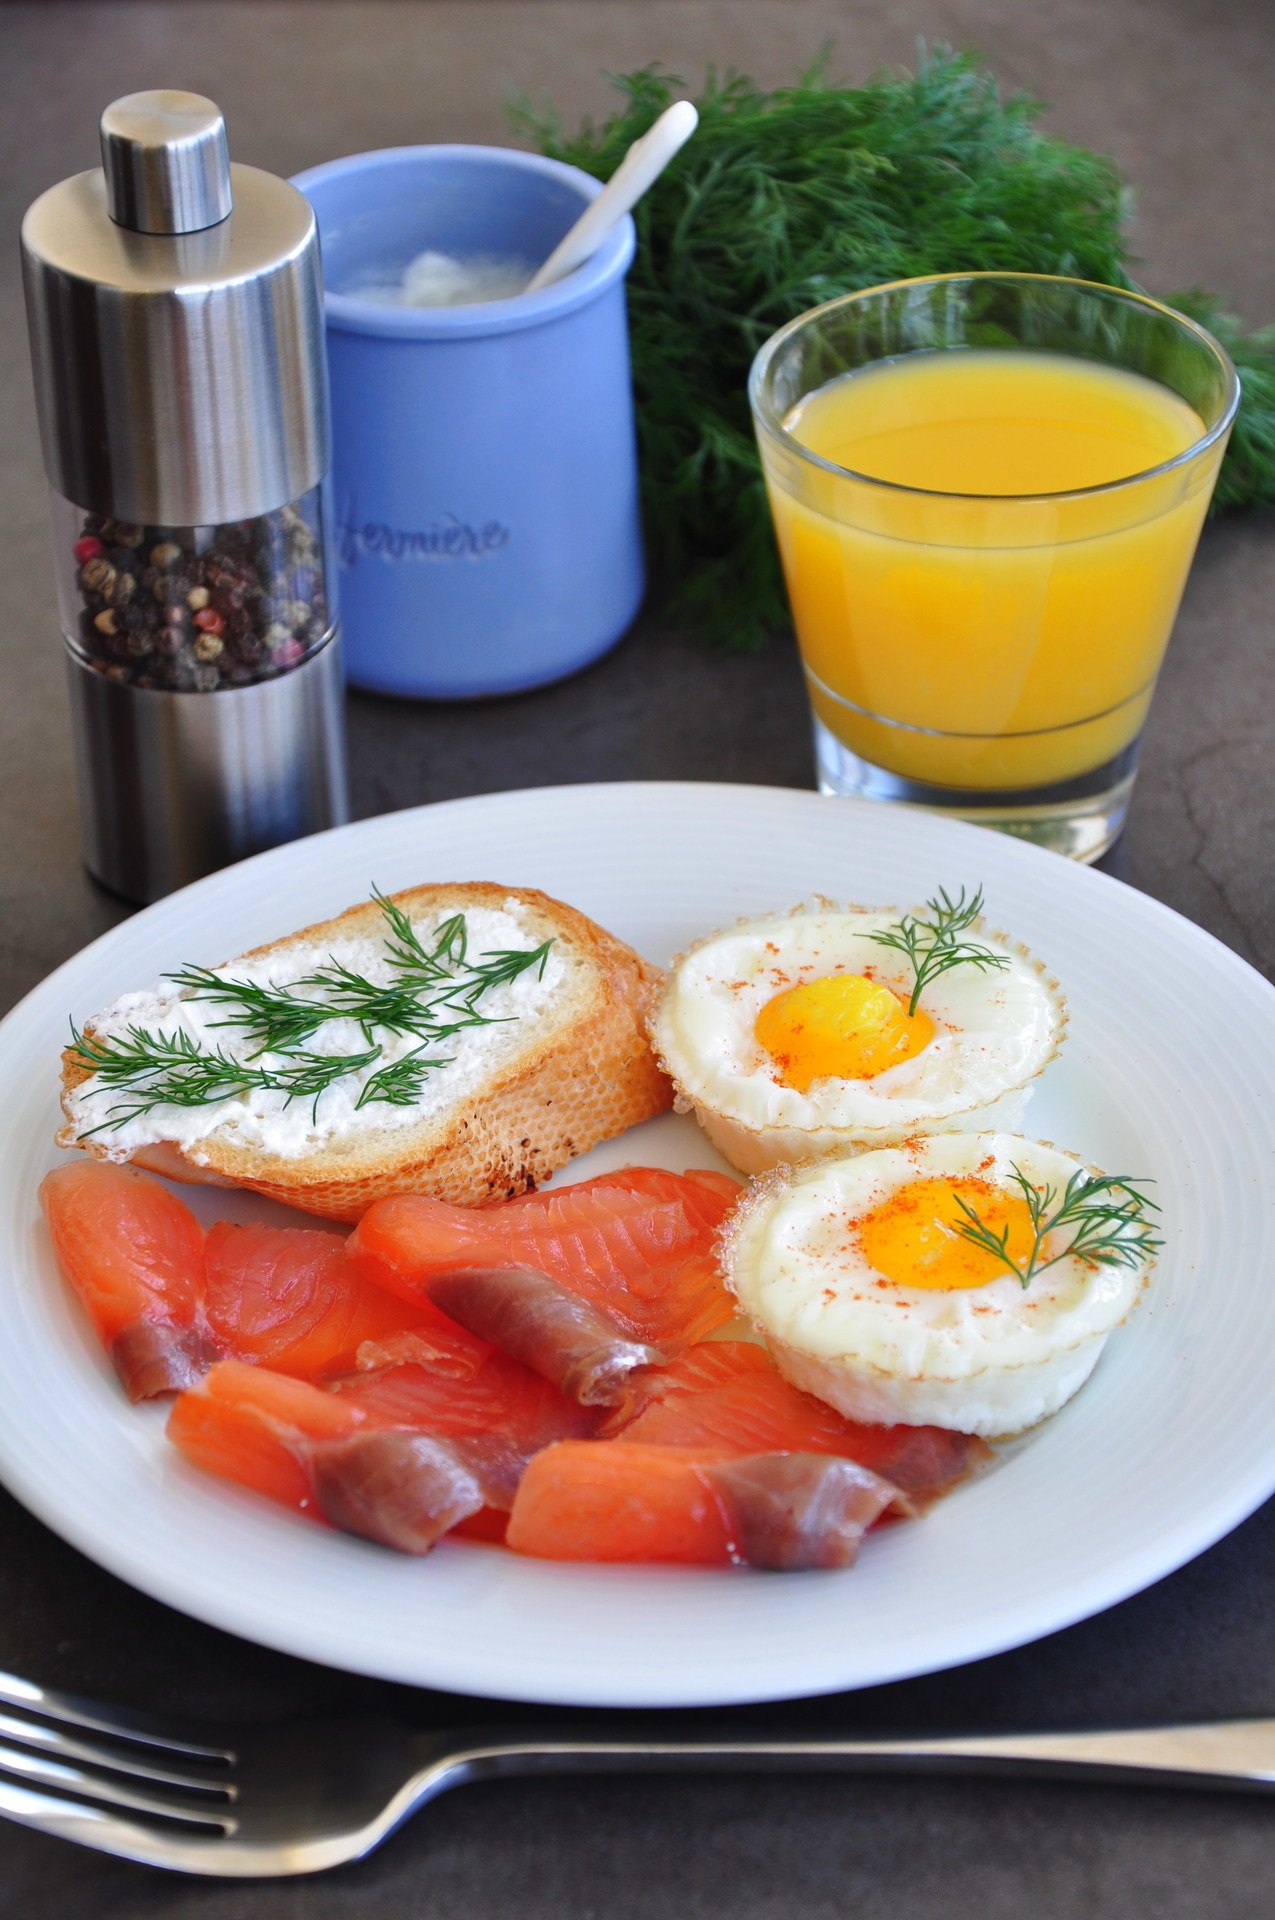 Видео как приготовить вкусный завтрак. Необычный завтрак. Вкусный и красивый завтрак. Легкий и красивый завтрак. Быстрый завтрак.